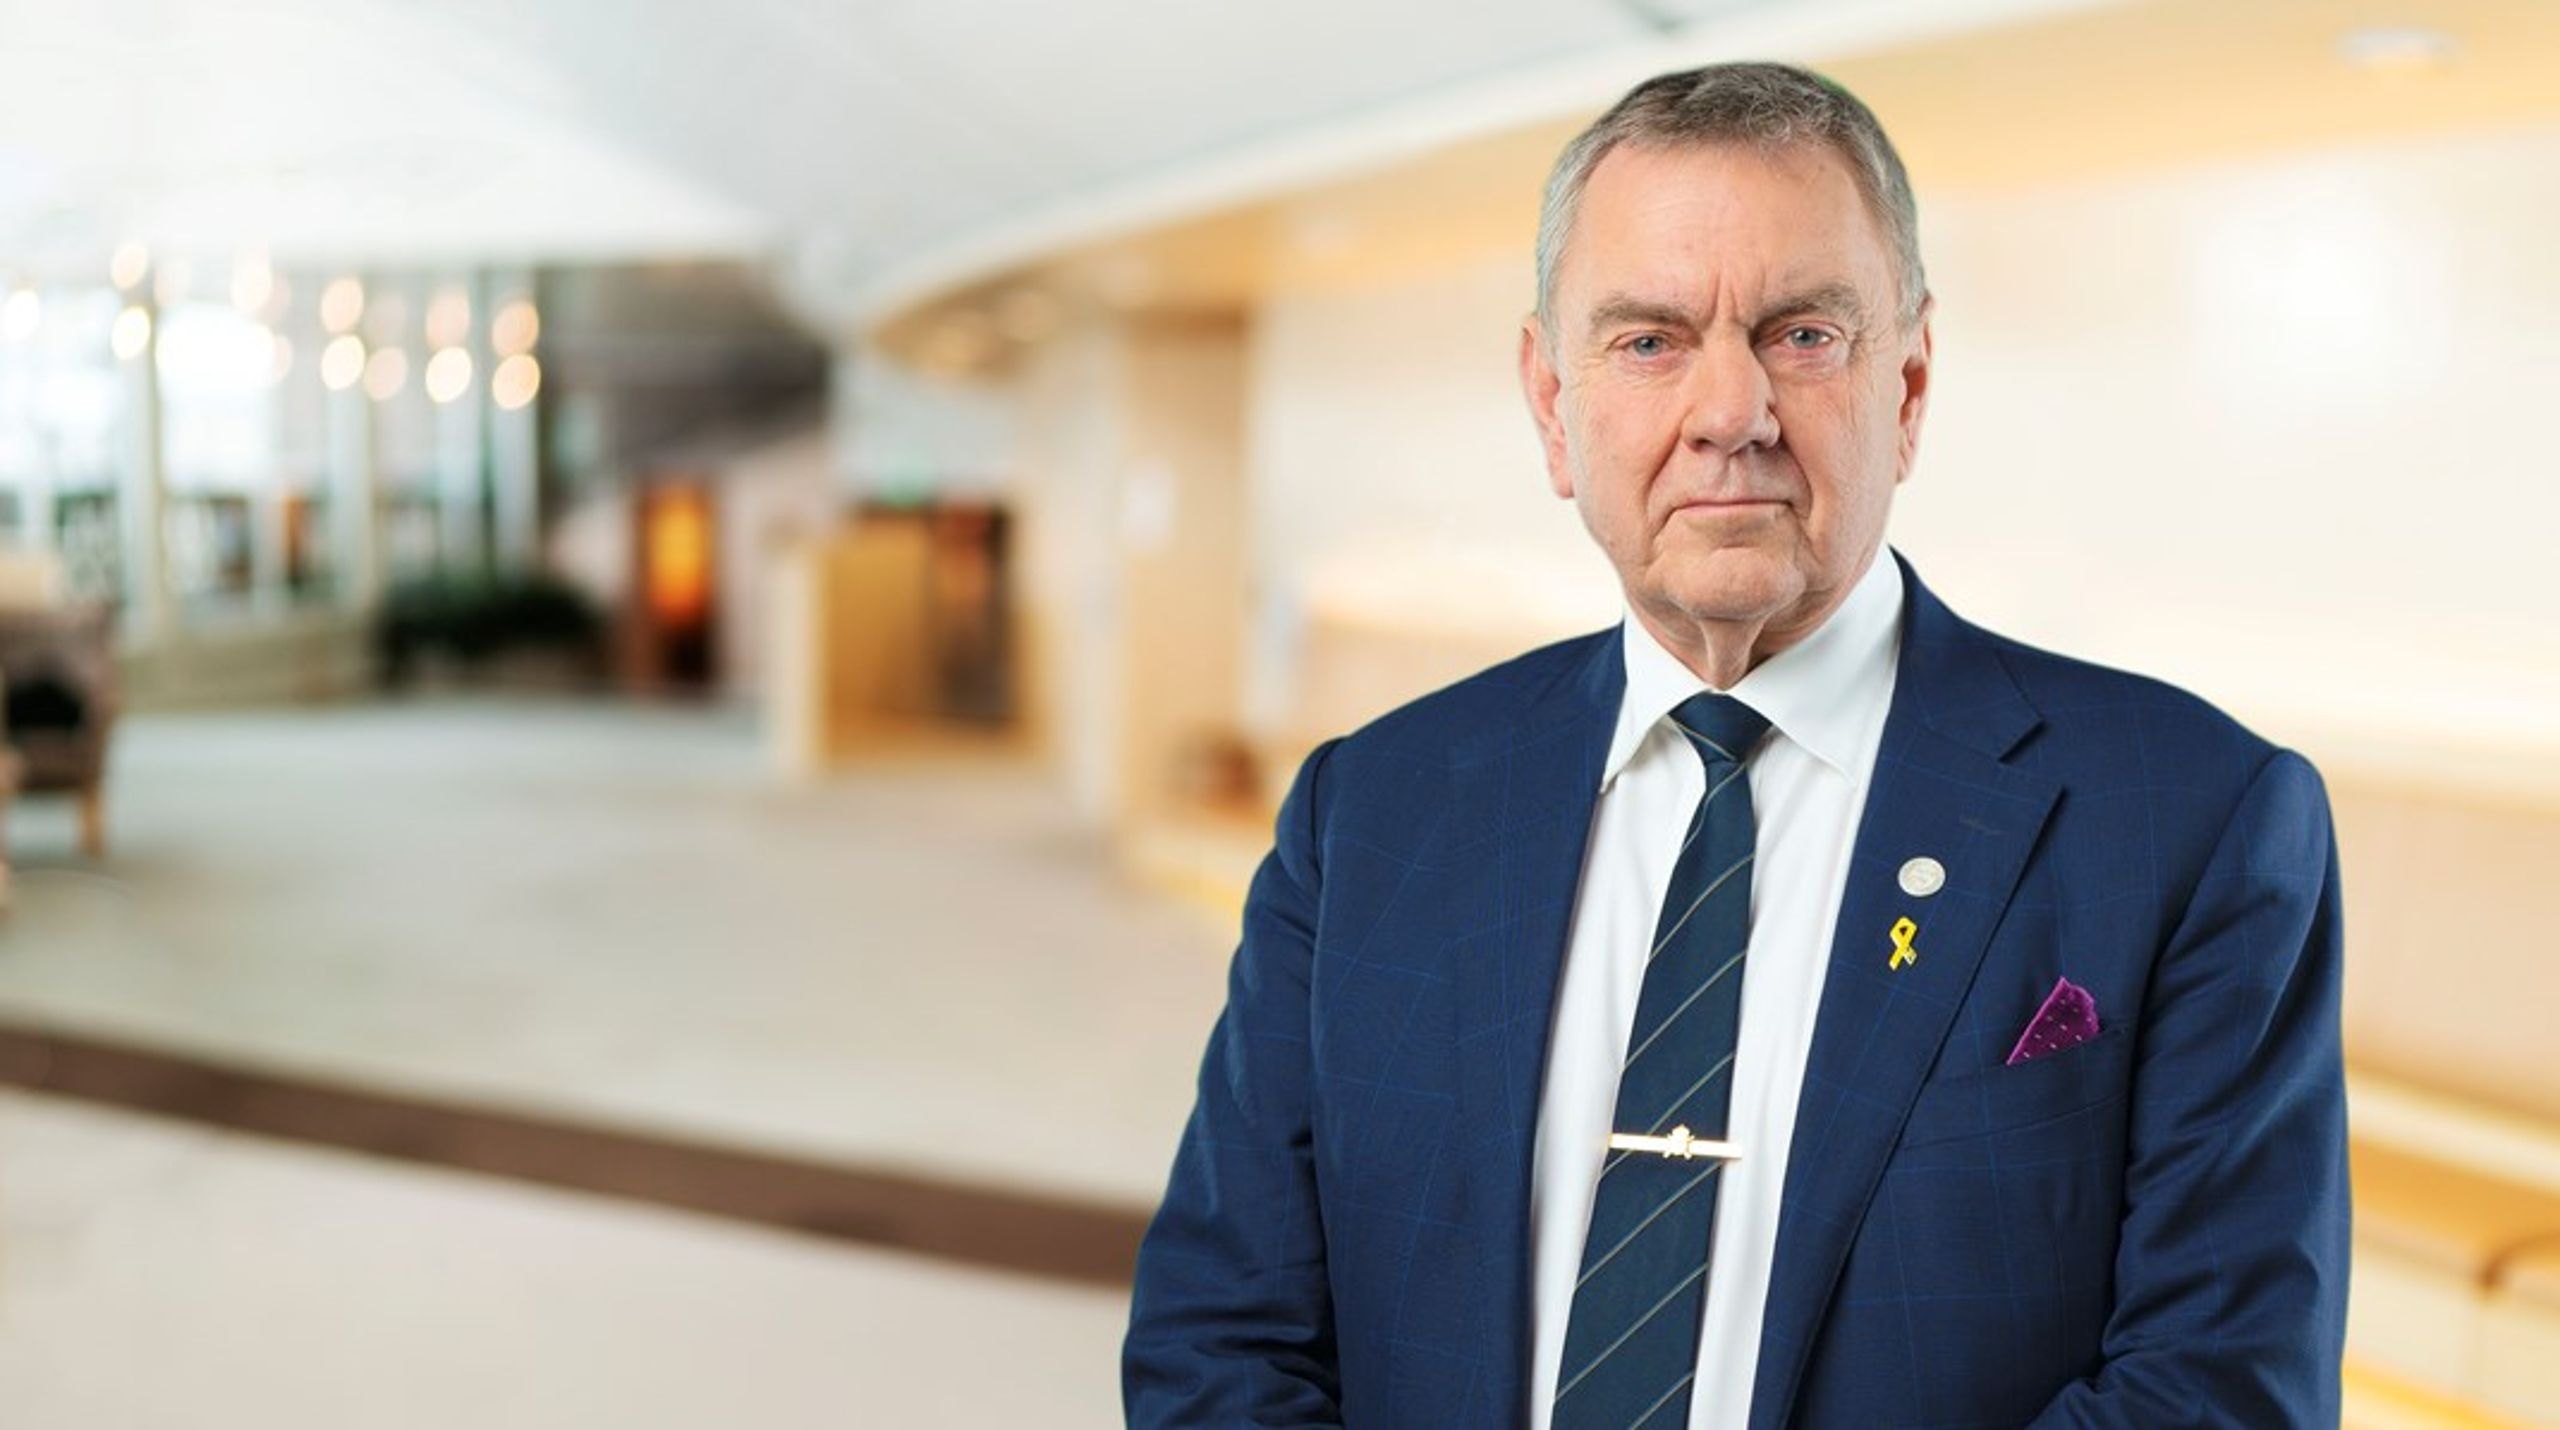 Sverigedemokraternas tidigare försvarspolitiska talesperson Roger Richthoff lämnade både partiet och försvarsutskottet i mars.